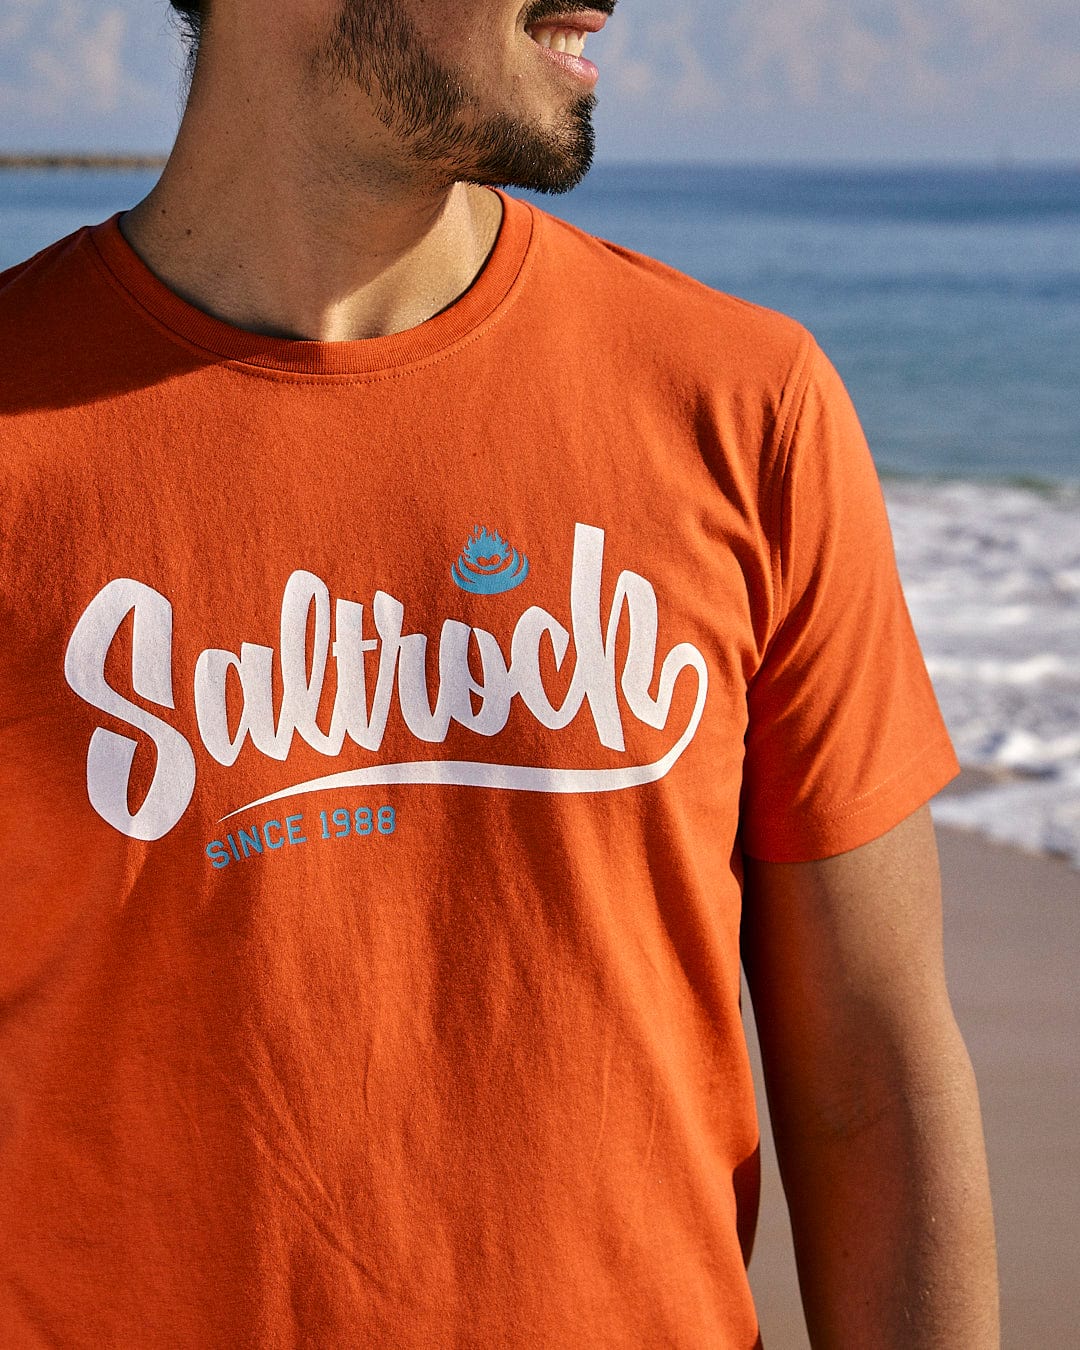 A man wearing a Saltrock Speed - Mens Short Sleeve T-Shirt - Red on the beach.